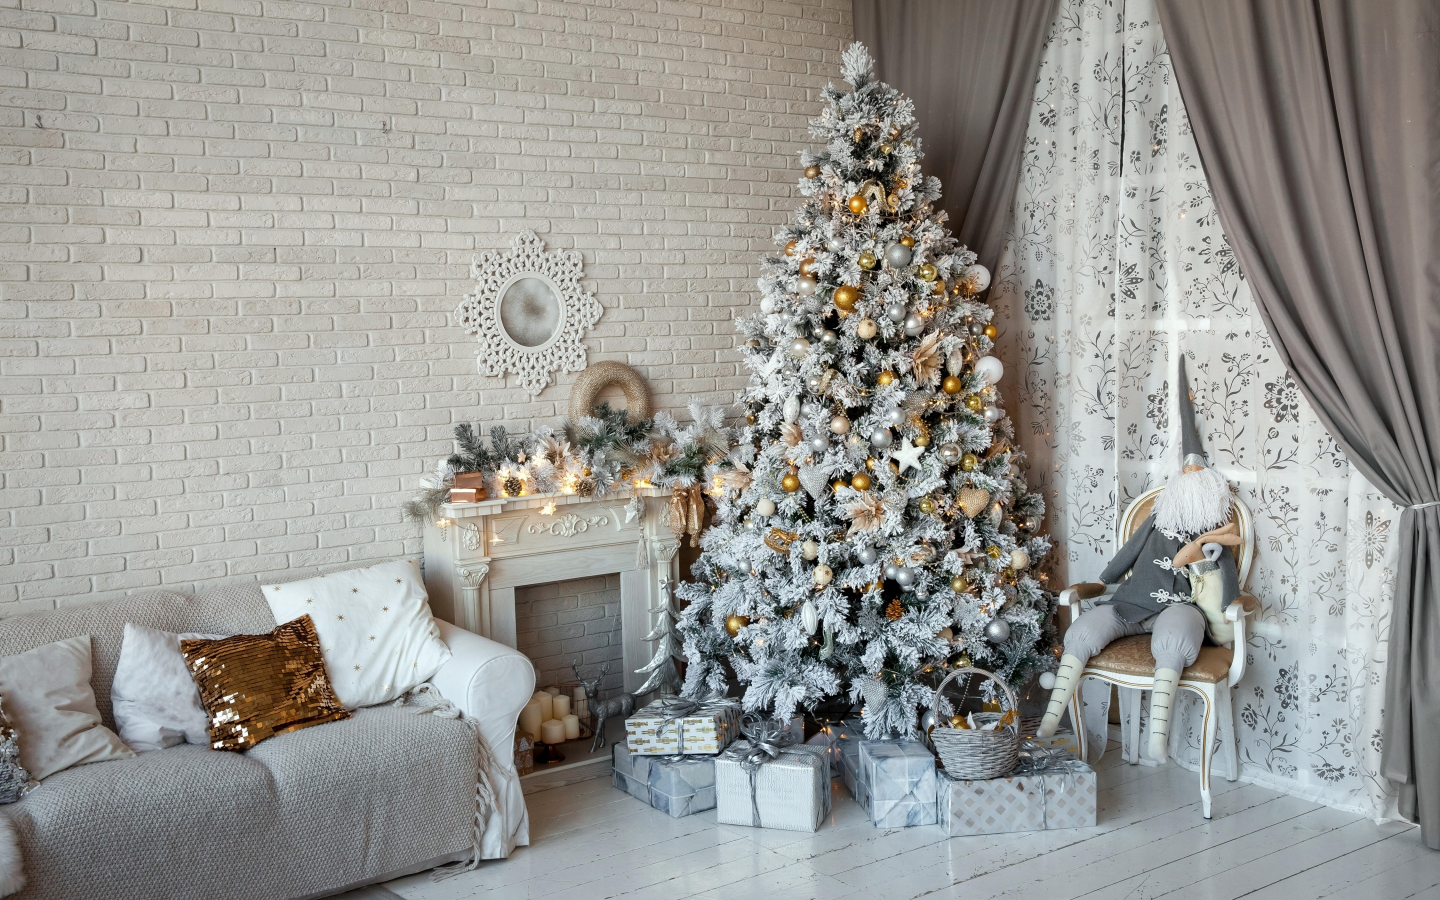 камин, рождество, новый год, елка, шторы, гном, игрушки, ёлка, стена, подарки, интерьер, диван